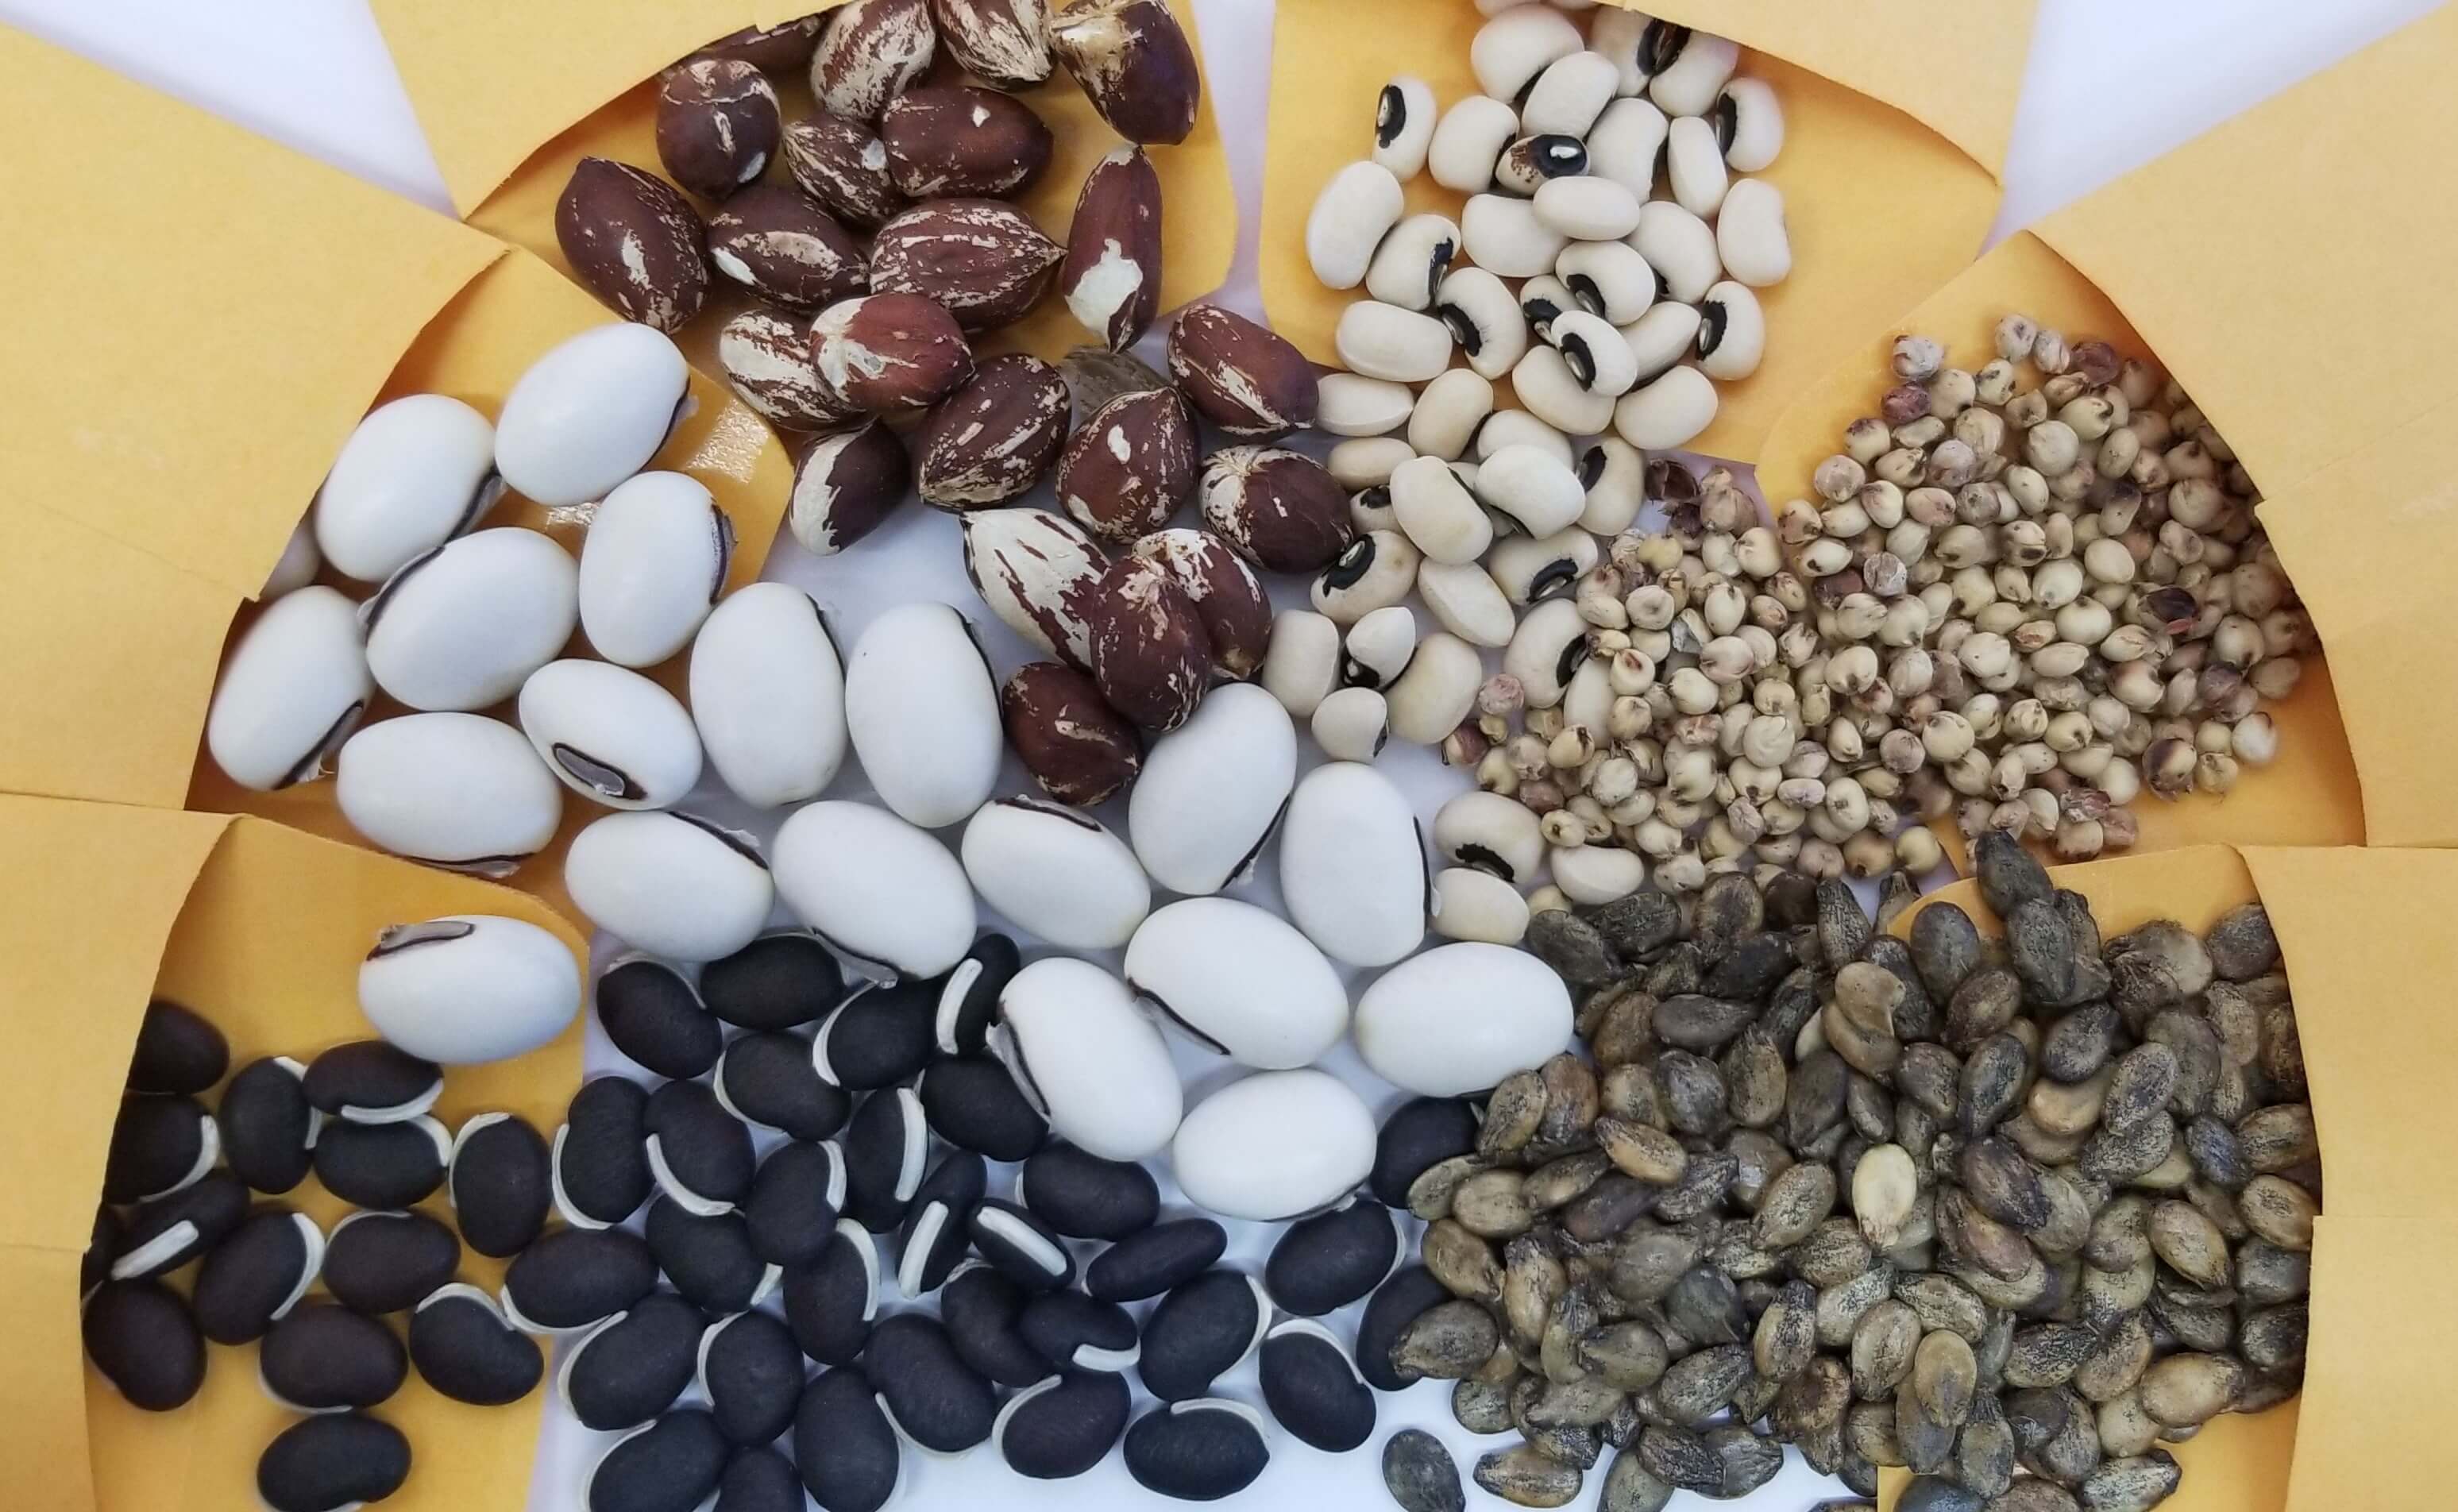 Les graines de différentes couleurs, formes et tailles provenant de plusieurs paquets de graines se répandent ensemble